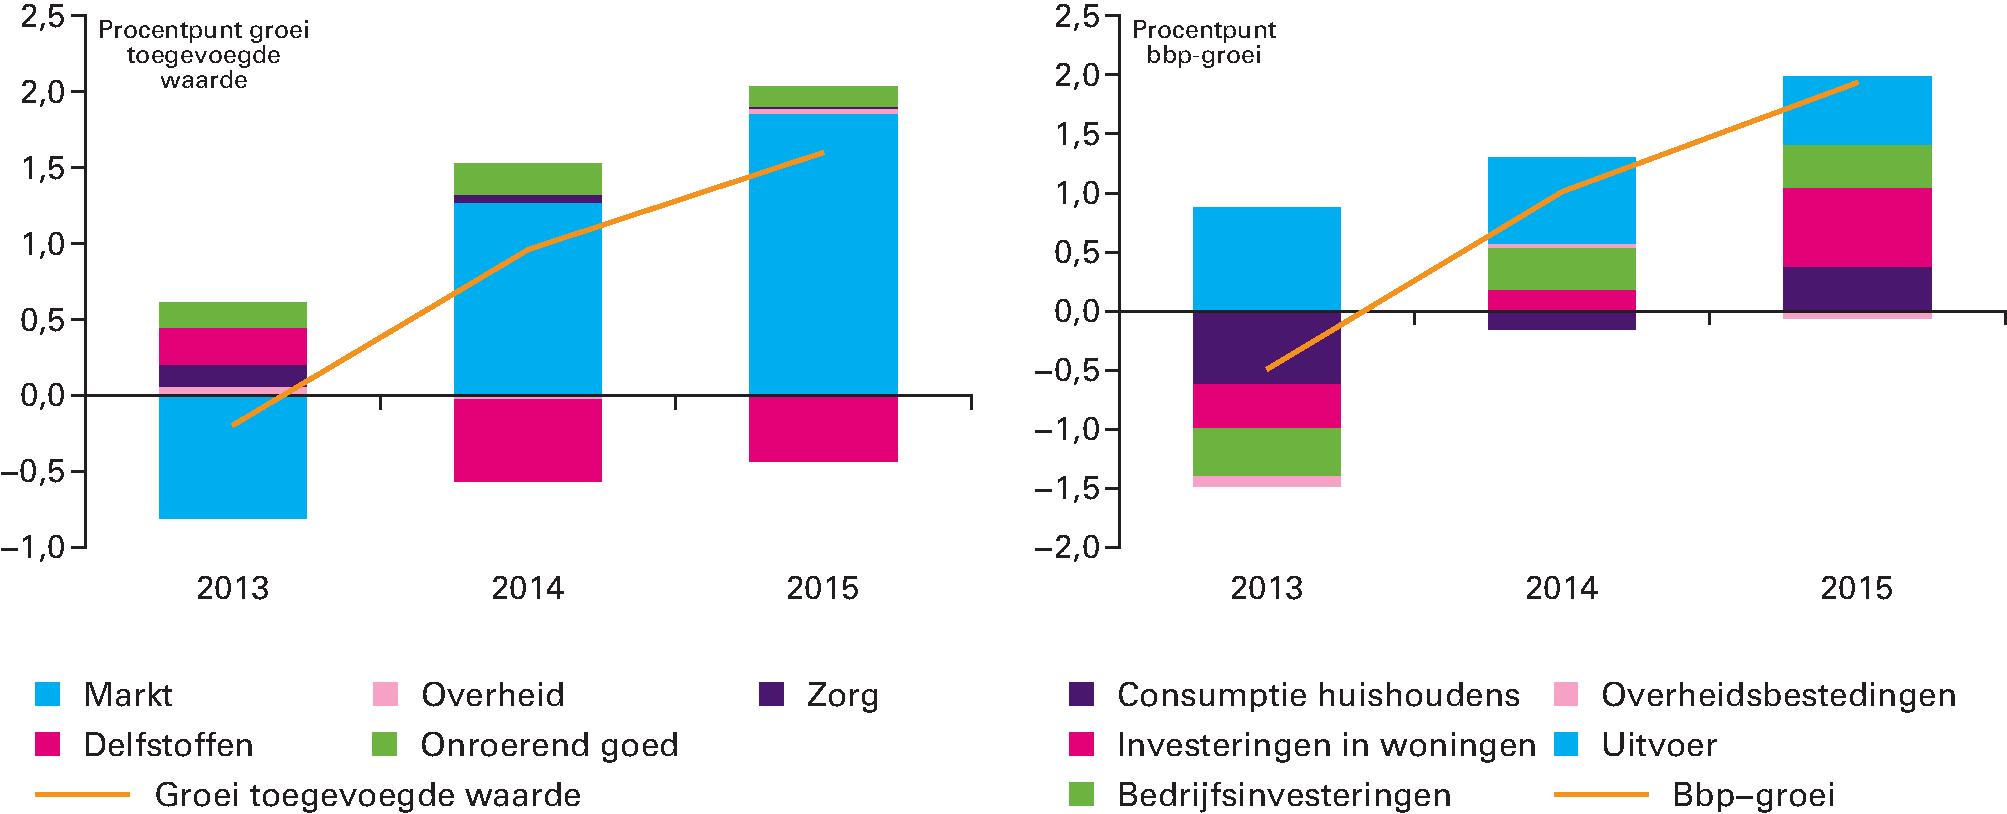 Figuur 1.2.2 Bijdrage van bedrijfstakken aan groei toegevoegde waarde (links) en bijdrage van bestedingen aan bbp-groei (rechts)